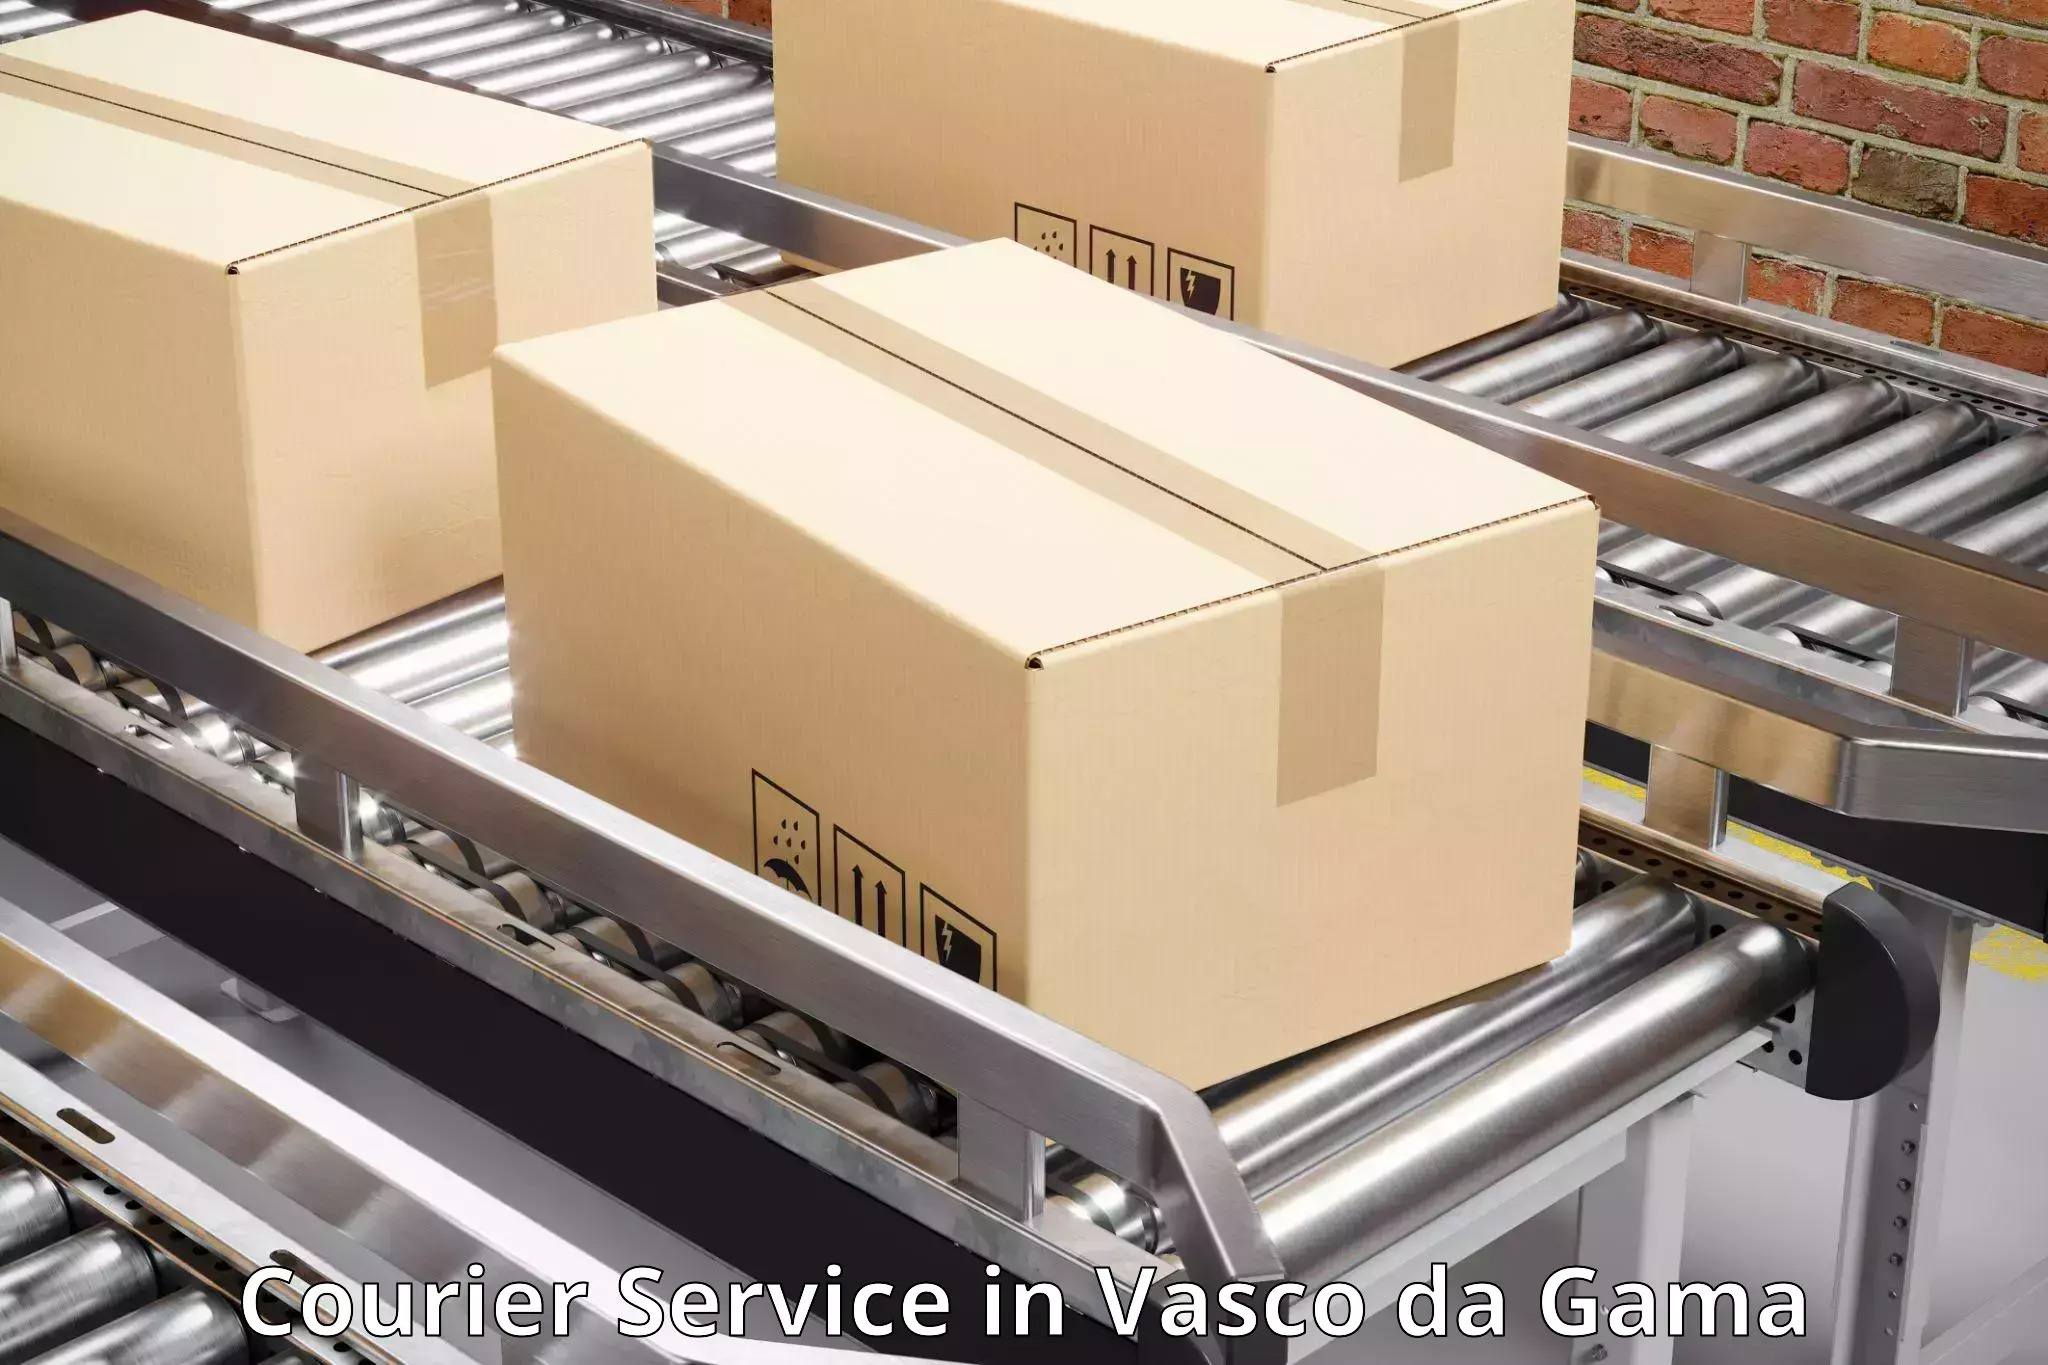 Modern courier technology in Vasco da Gama